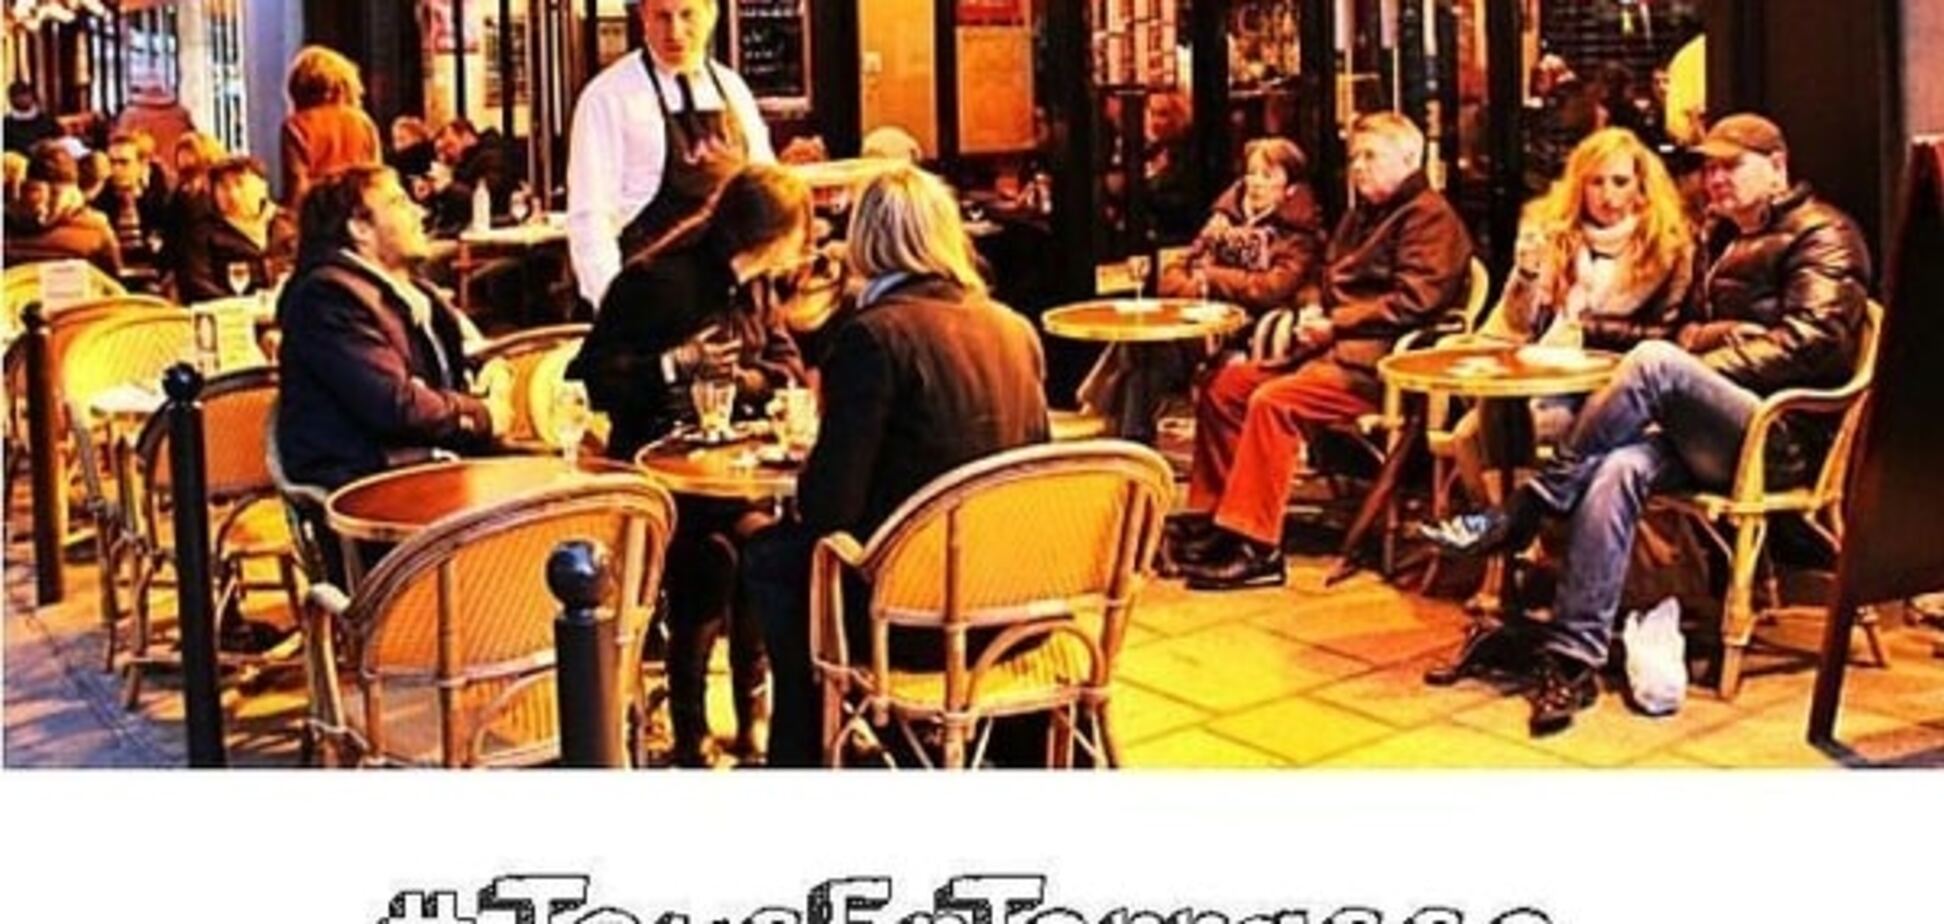 'Идите в ж*пу со своим терроризмом': парижане вышли на улицы и в кафе